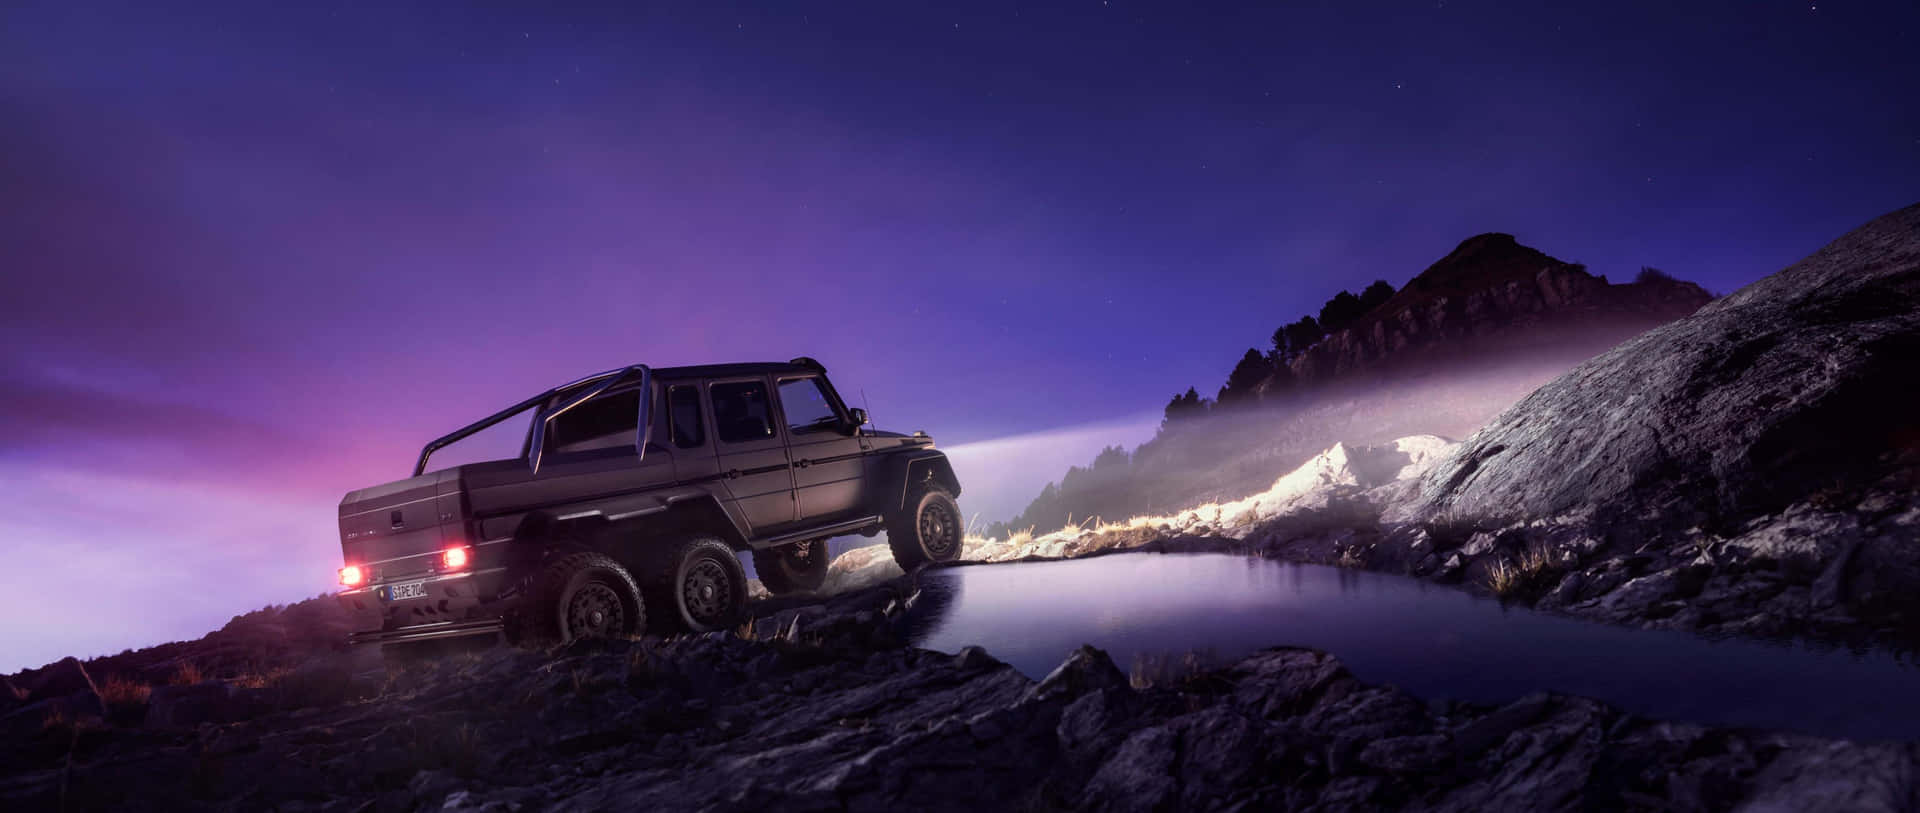 Mercedes G63 Nighttime Offroad Adventure Wallpaper